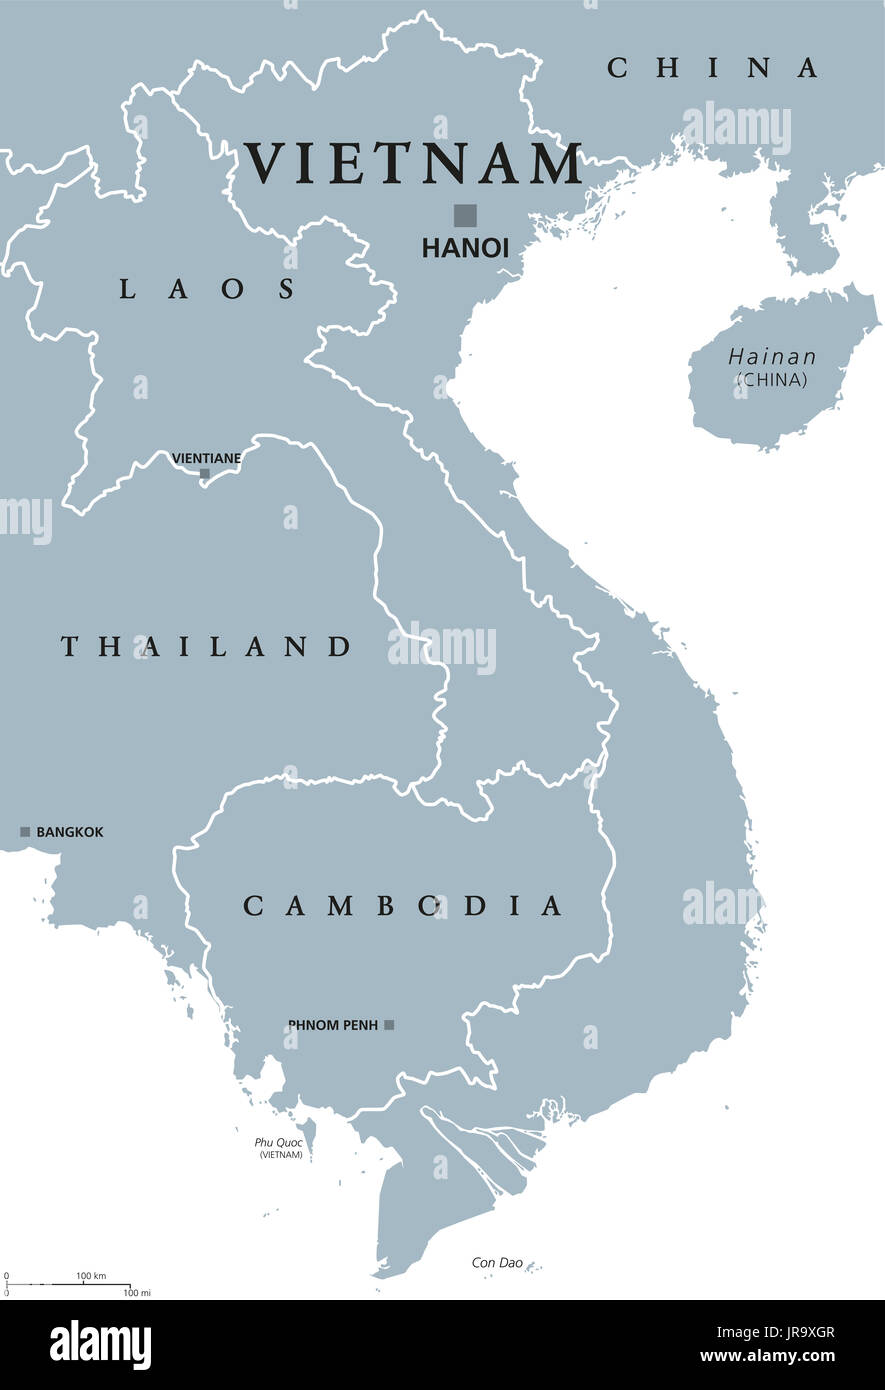 Vietnam mappa politico con capitale Hanoi e frontiere. Etichetta inglese. Repubblica socialista del Vietnam. Il paese più orientale del sud-est asiatico. Foto Stock